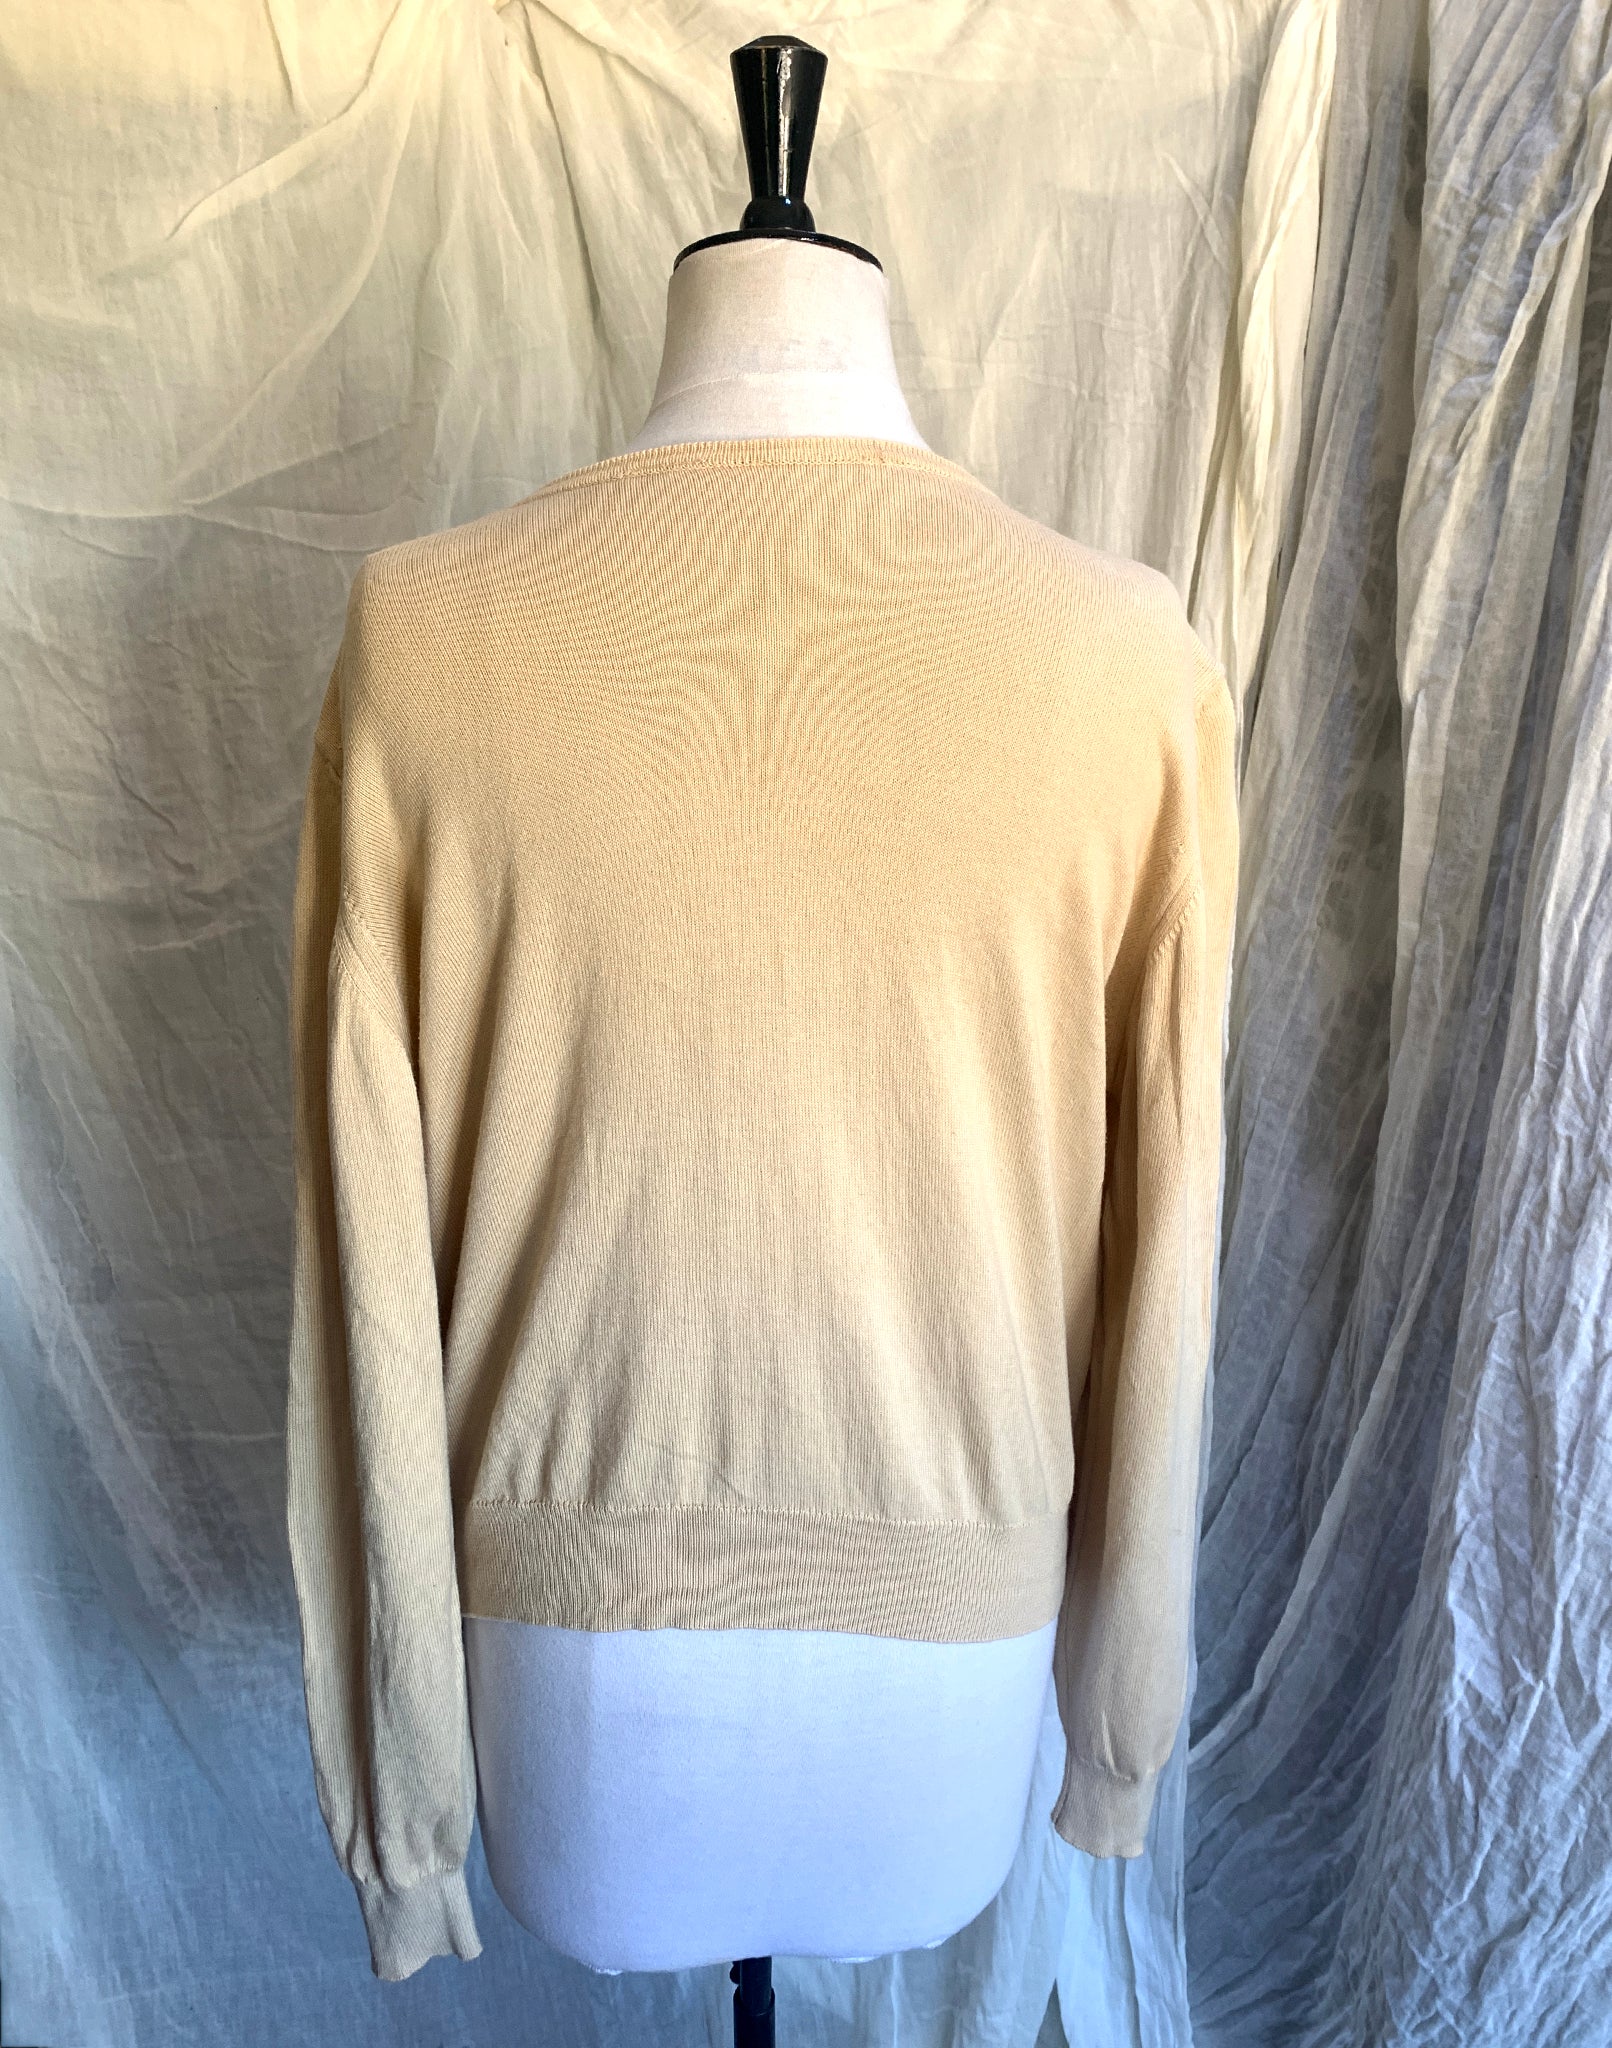 Vintage 90's Cream Cotton Cardigan - Size M L